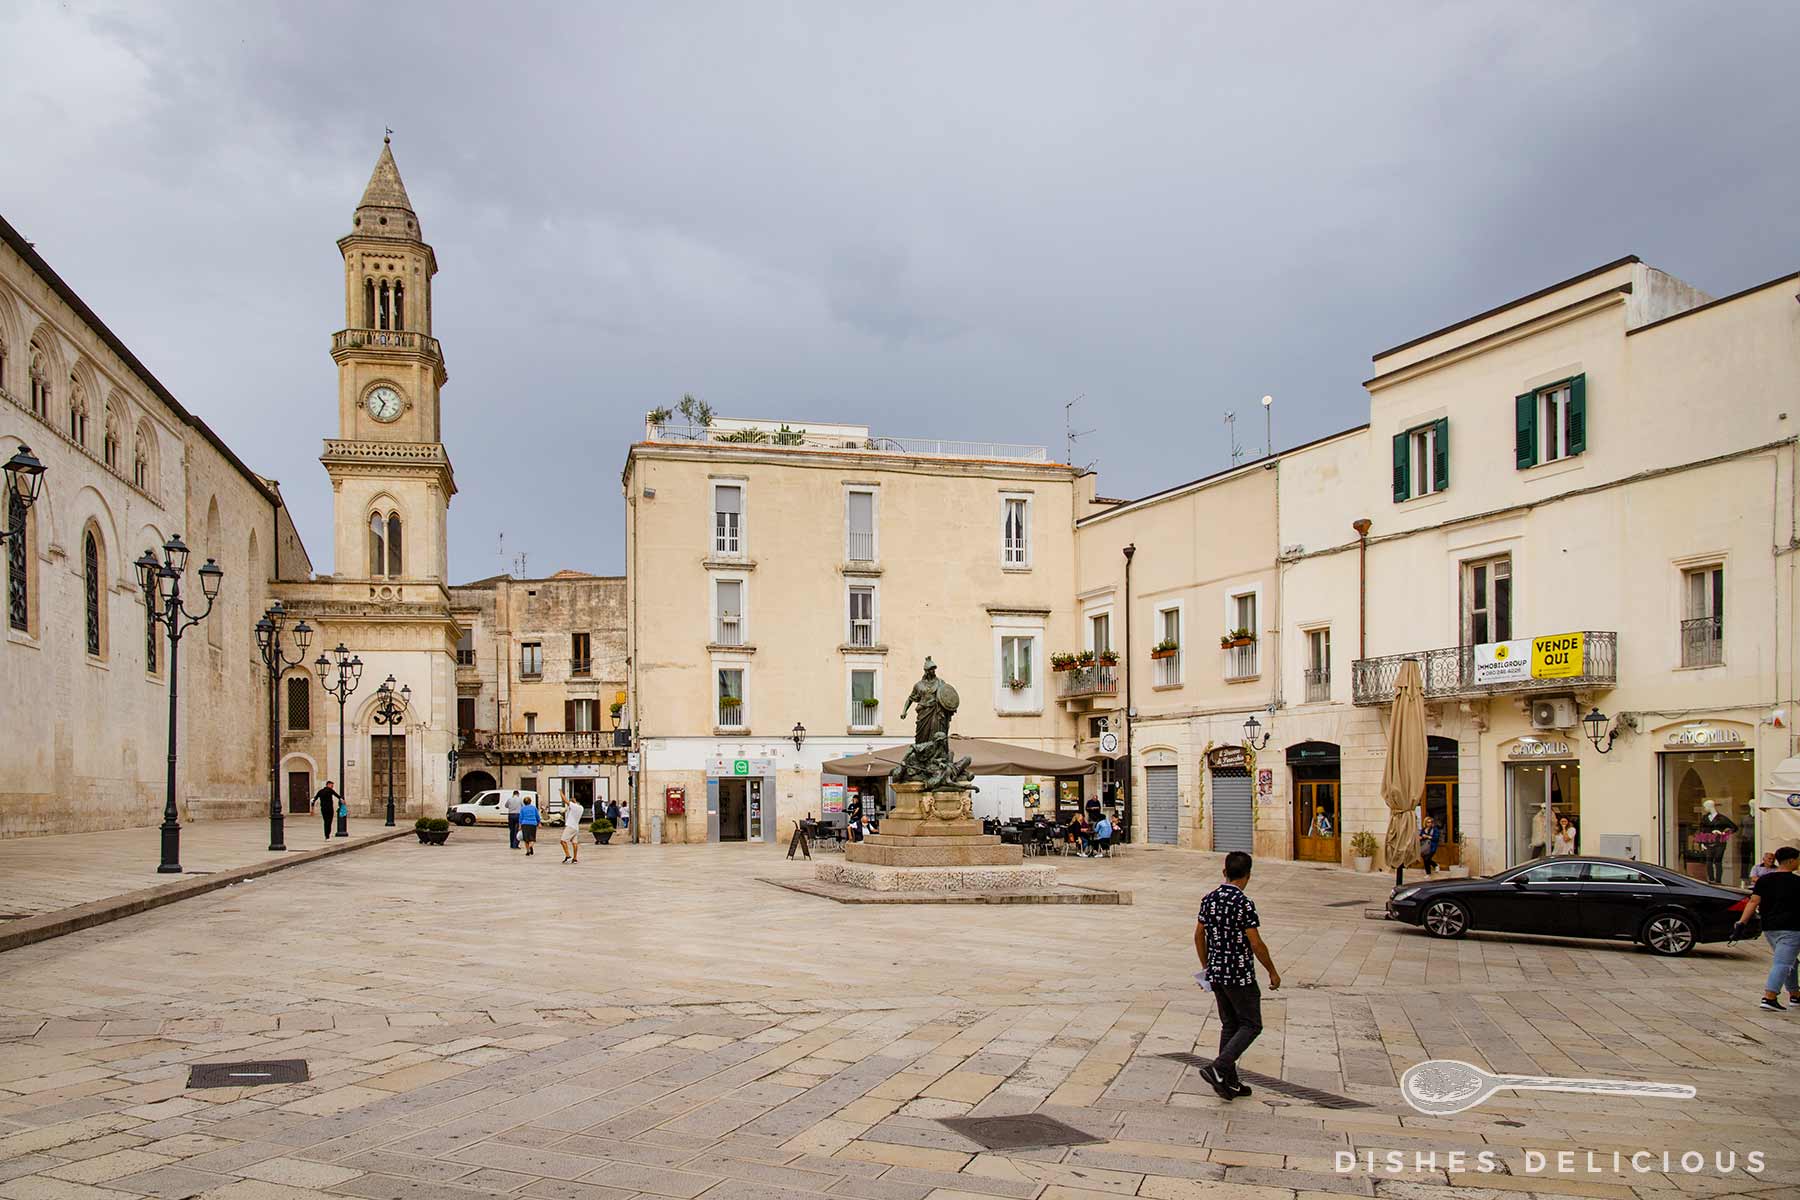 Zentrale Piazza in Altamura, links der Dom und Glockenturm, in der Mitte ein Denkmal, dahinter Geschäftsgebäude und eine Bar.